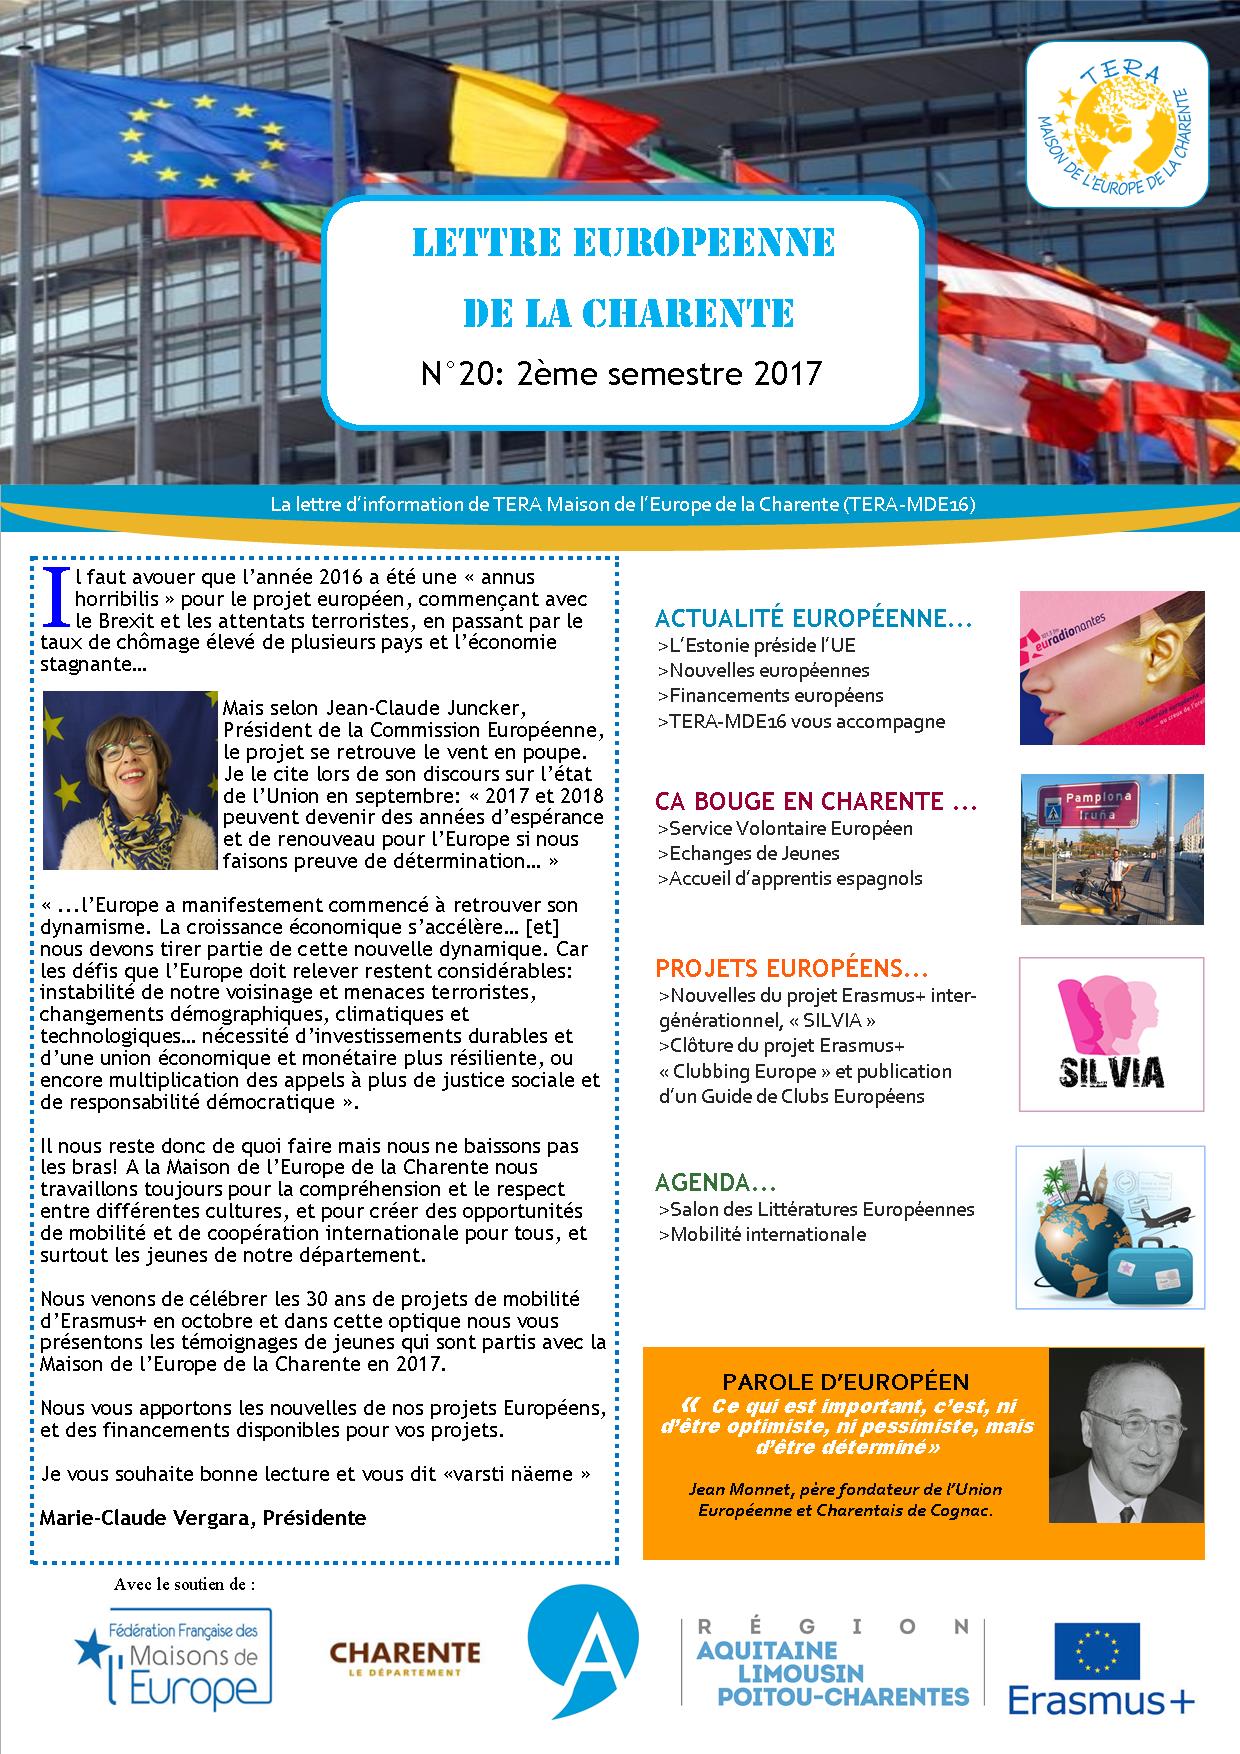 Lettre Européenne de la Charente n°20 du 2ème semestre 2017